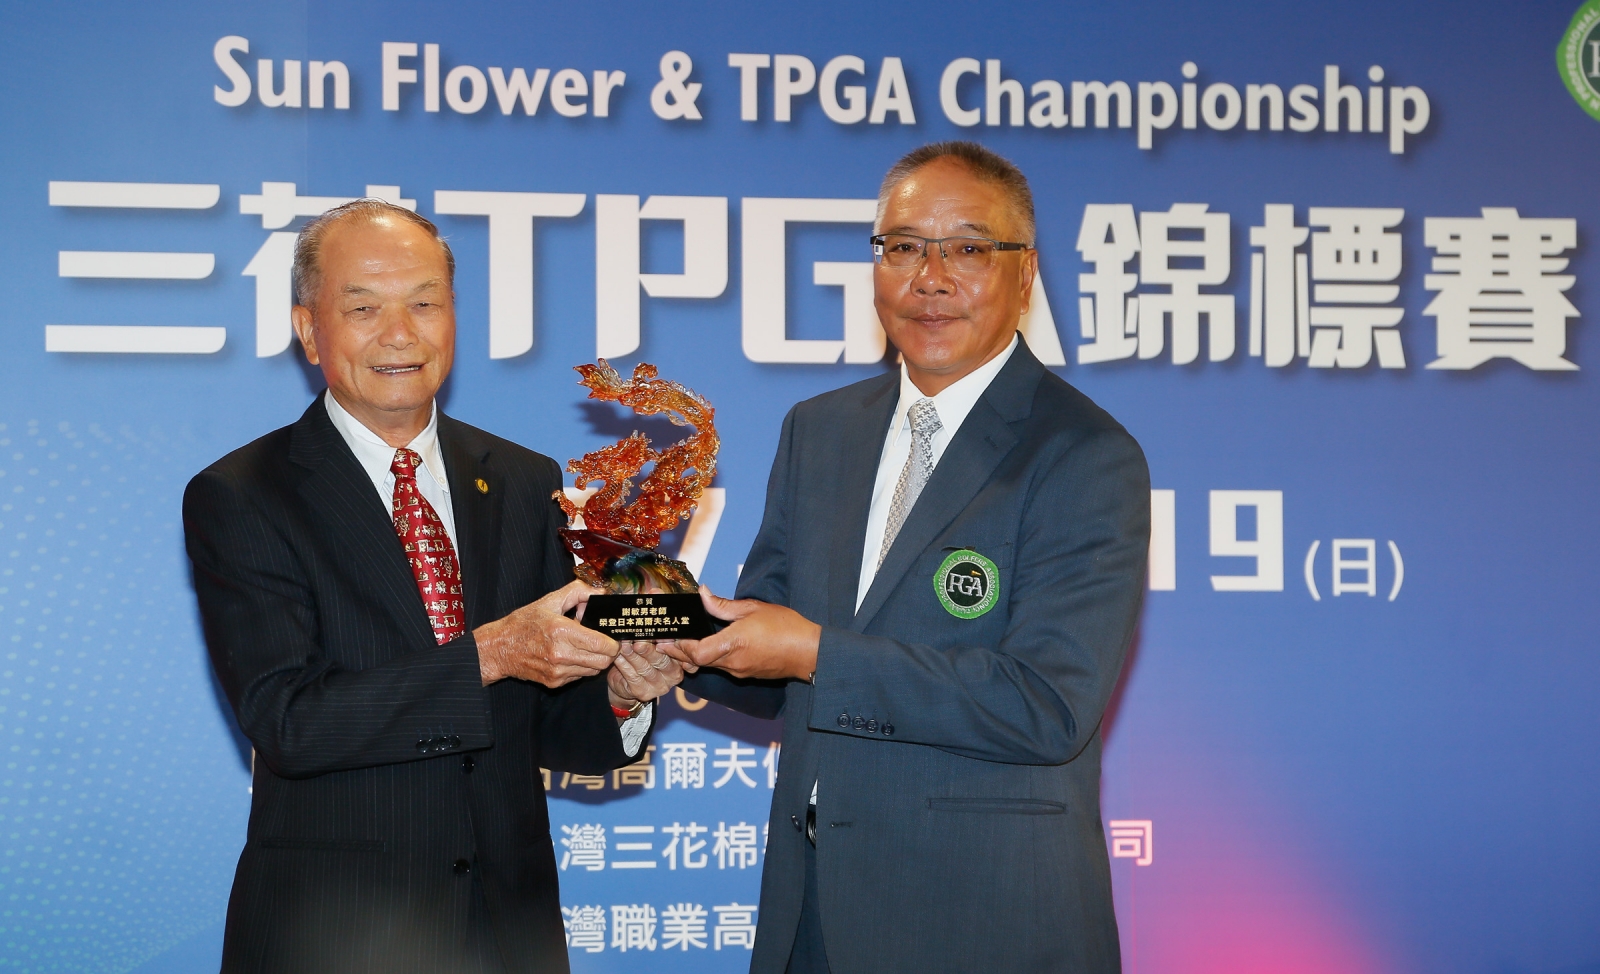 TPGA理事長謝錦昇頒發獎盃給資深名將謝敏男以彰揚他入選日本職業高球名人堂的成就(葉勇宏攝)